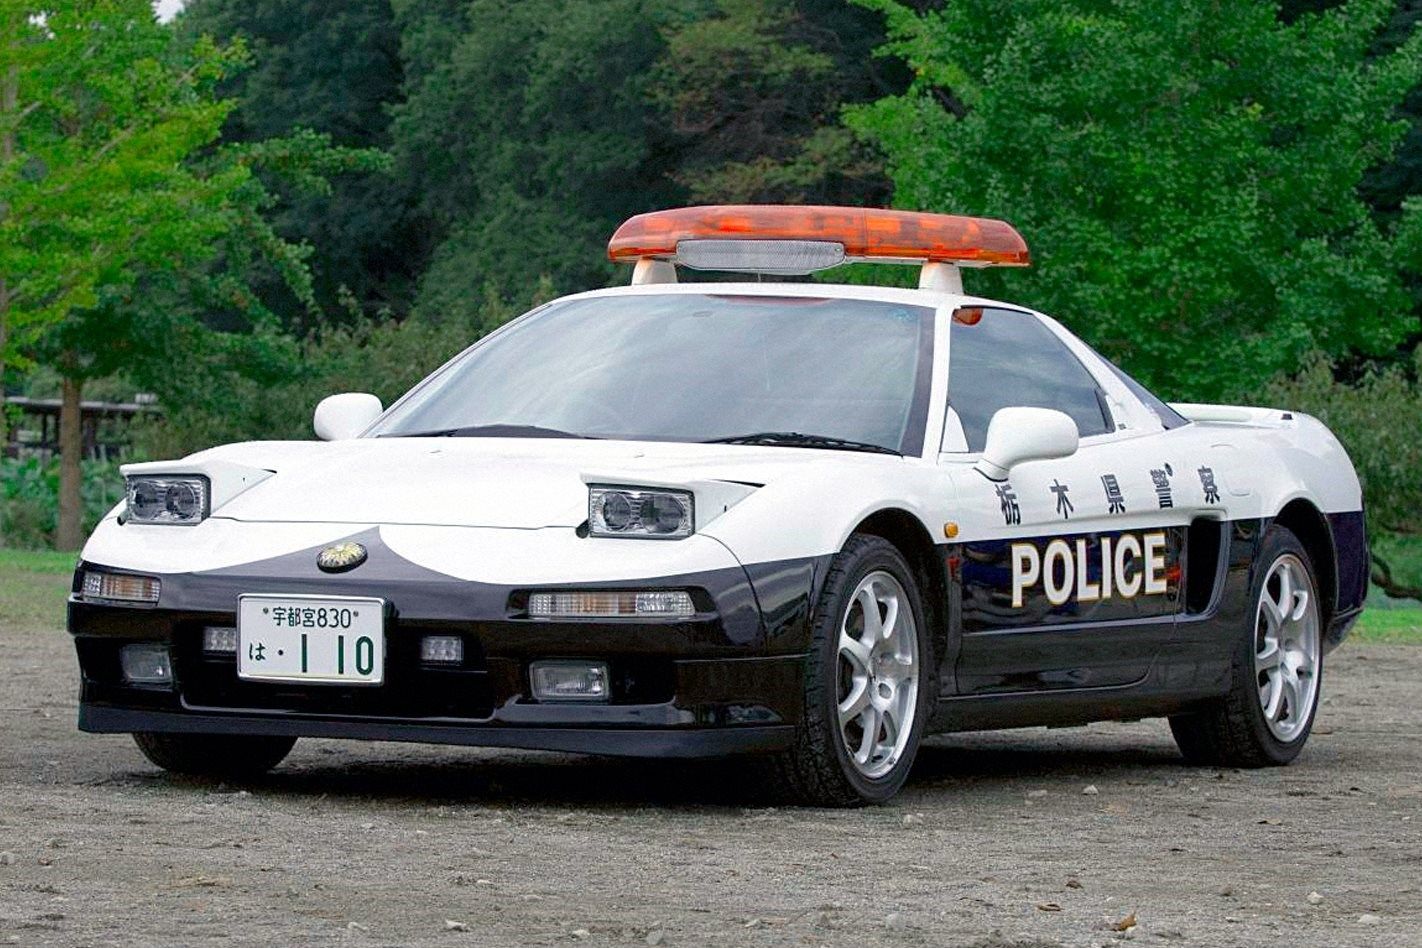 Black and white Honda NSX police vehicle 